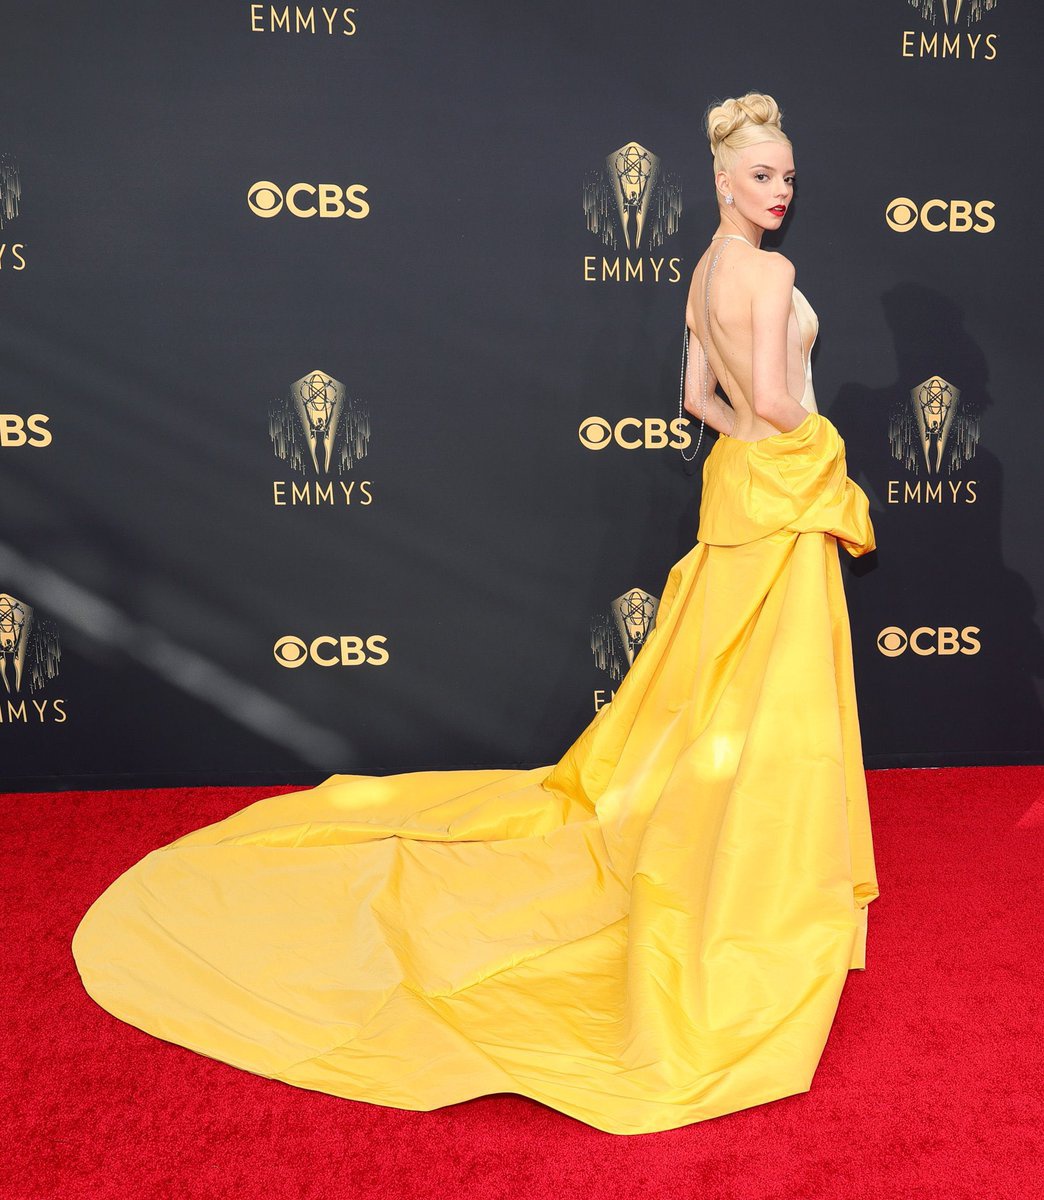 Anya Taylor - Joy đến Emmy 2021 với chiếc váy vàng của Dior. Chiếc váy được lấy cảm hứng từ thiết kế bí ẩn nhất lịch sử phim ảnh thế giới từng xuất hiện trong tác phẩm “What A Way To Go!”.